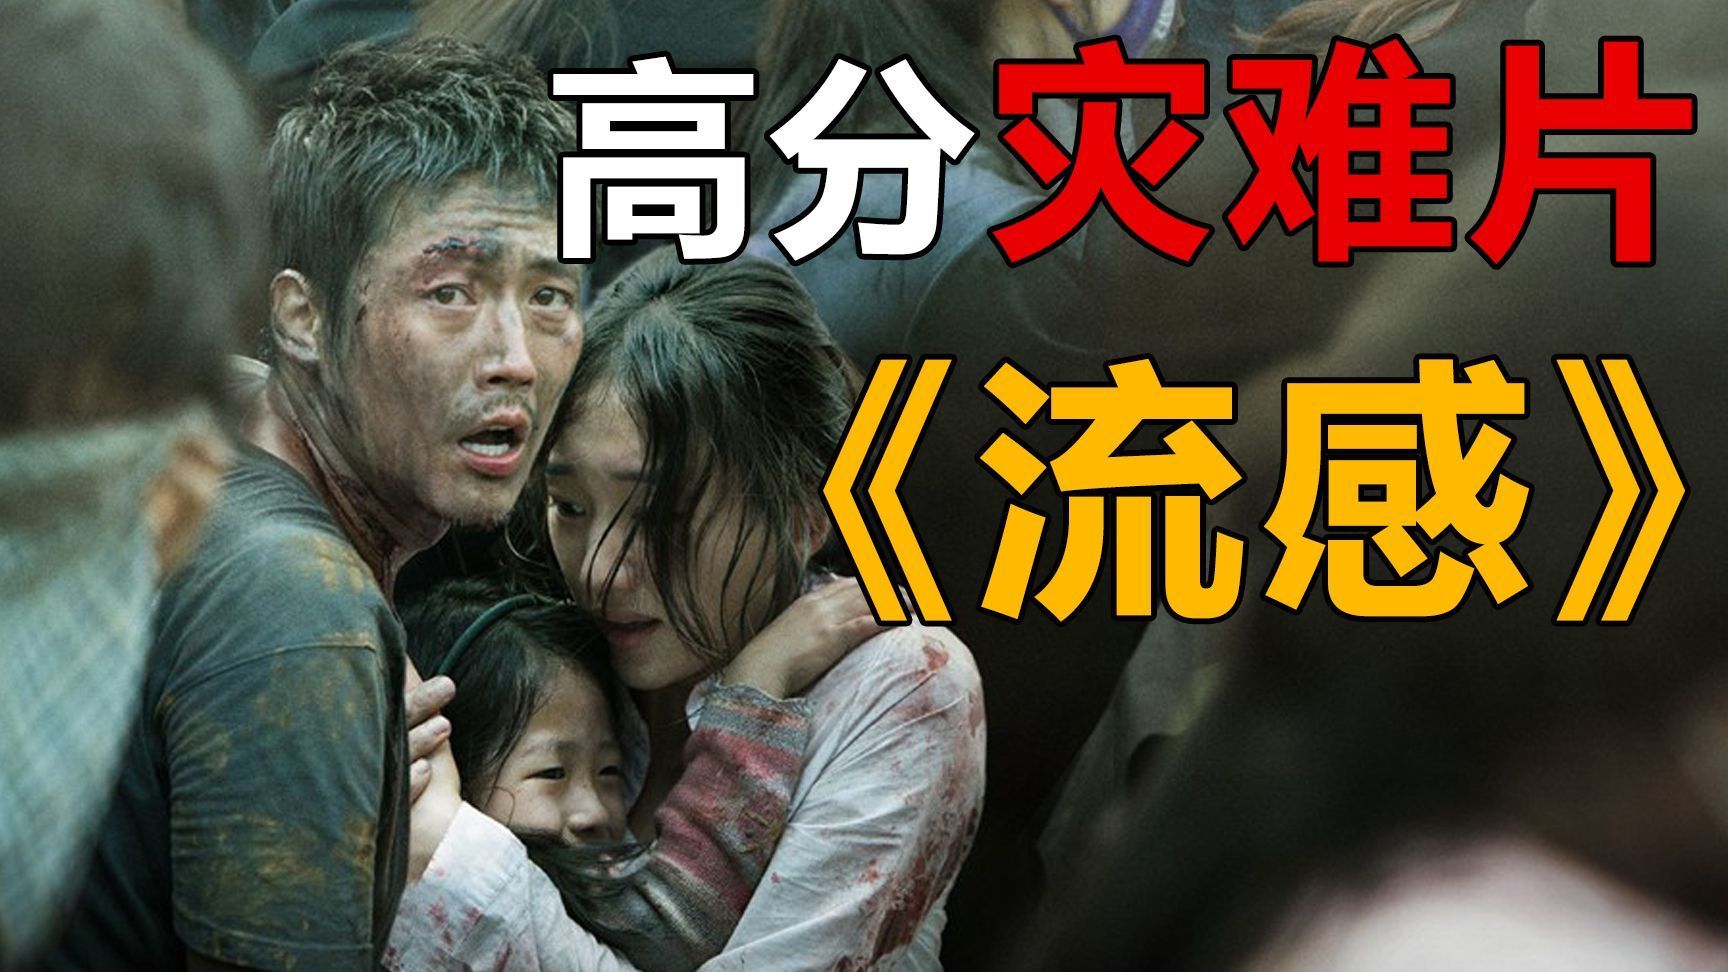 《流感》是韩国战疫的电影,面对灾难,人性的光耀和龌龊与丑陋